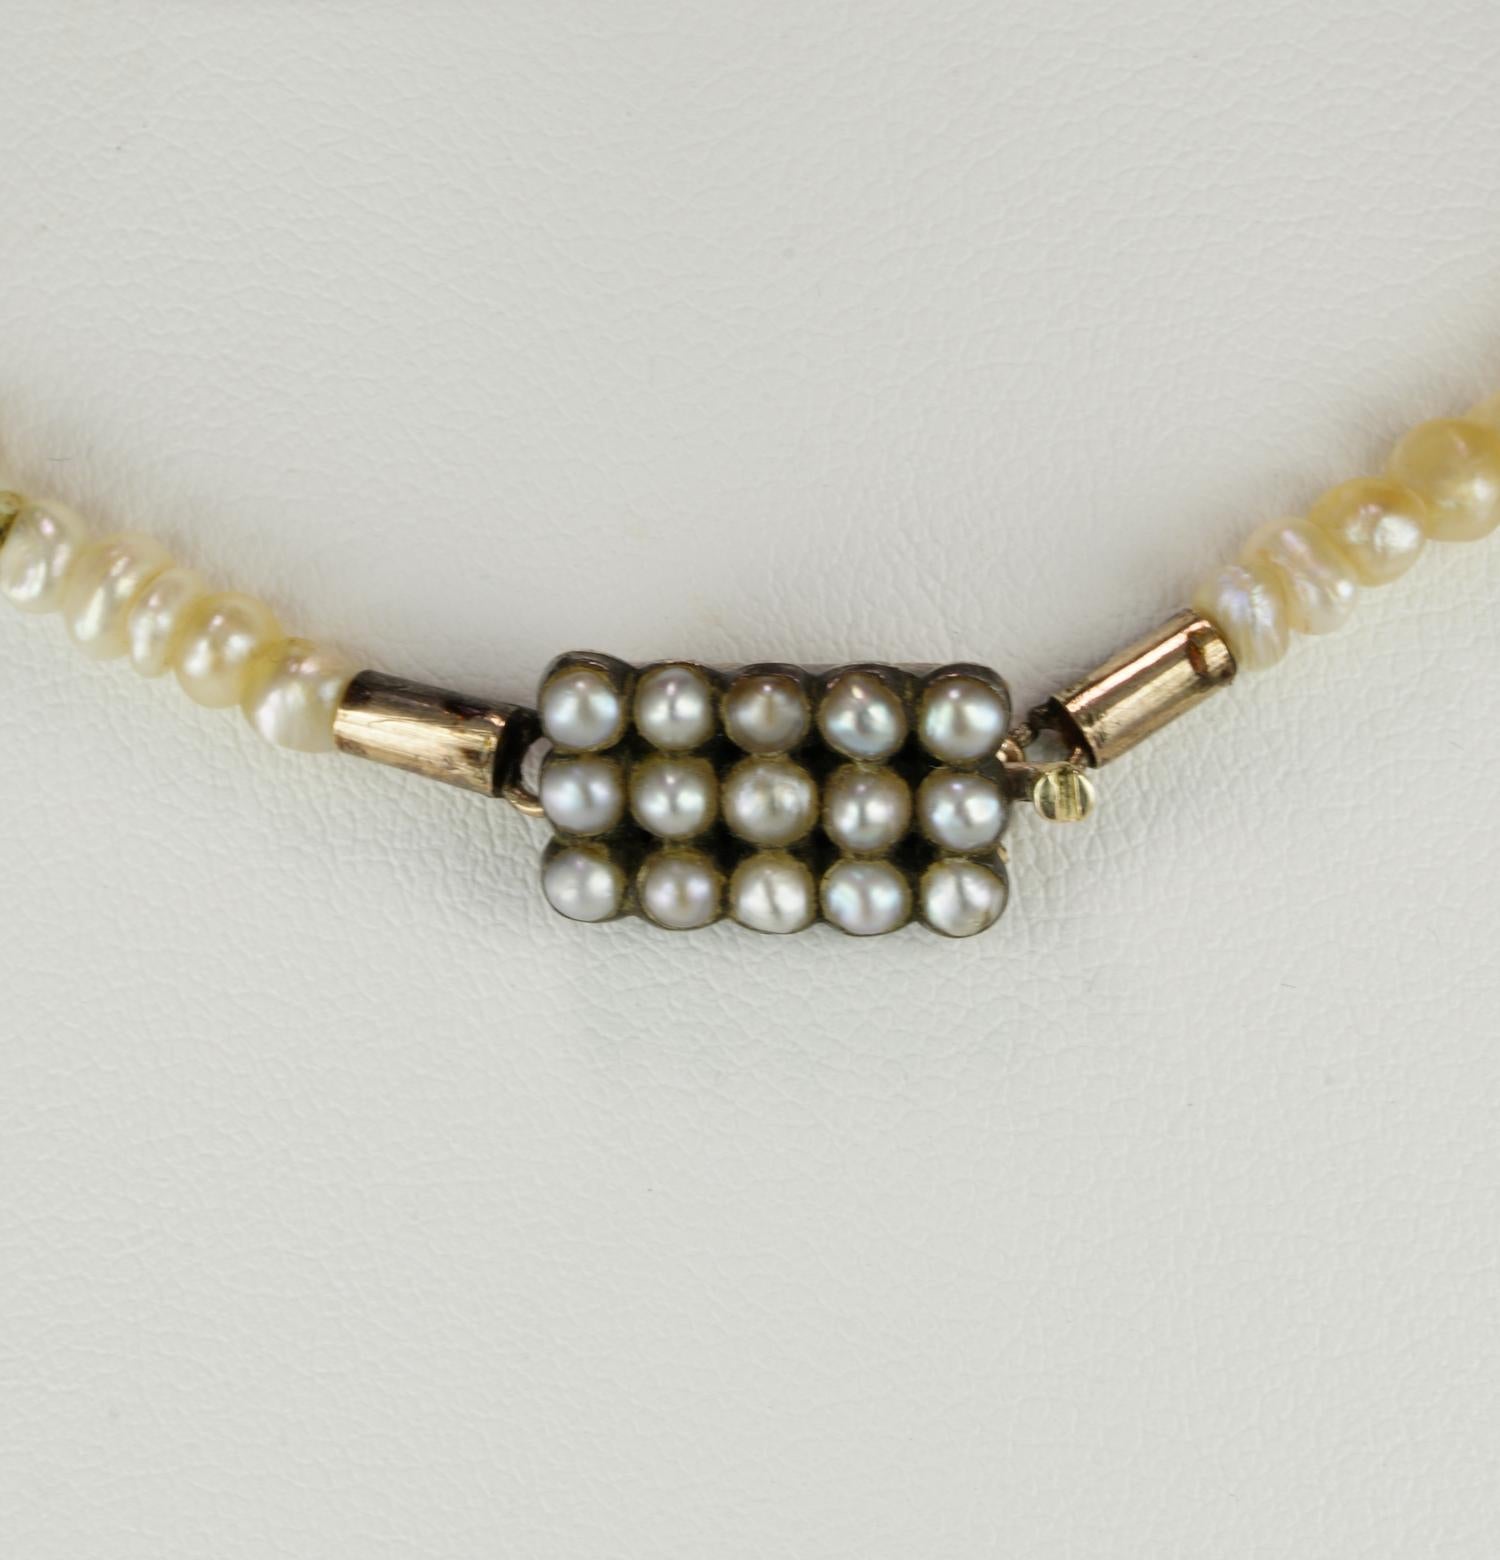 basra pearls necklace